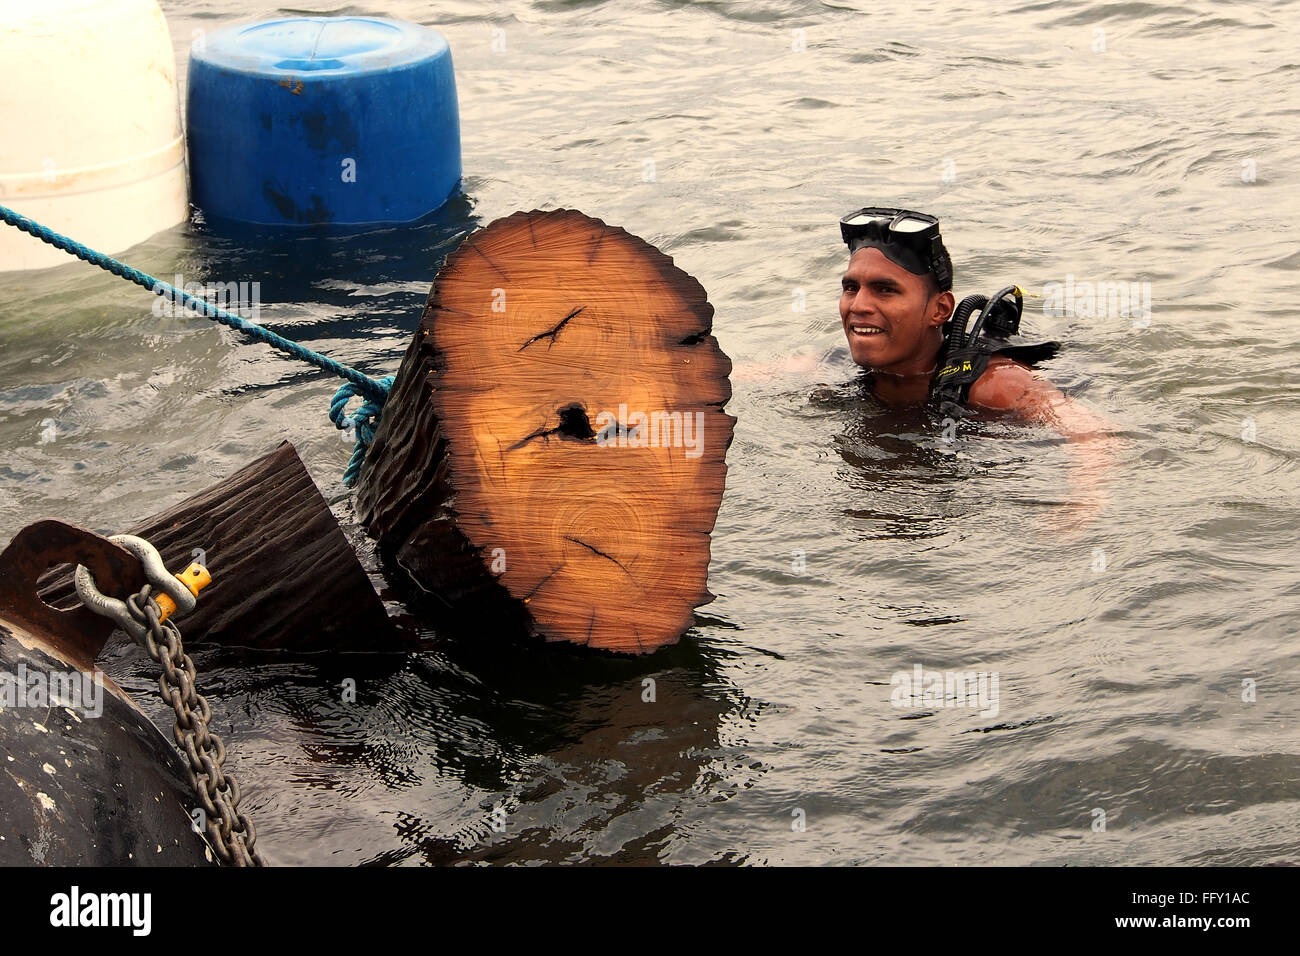 Anmeldung unter Wasser Lago Bayano, Panama - einer der Taucher-Logger. Stockfoto